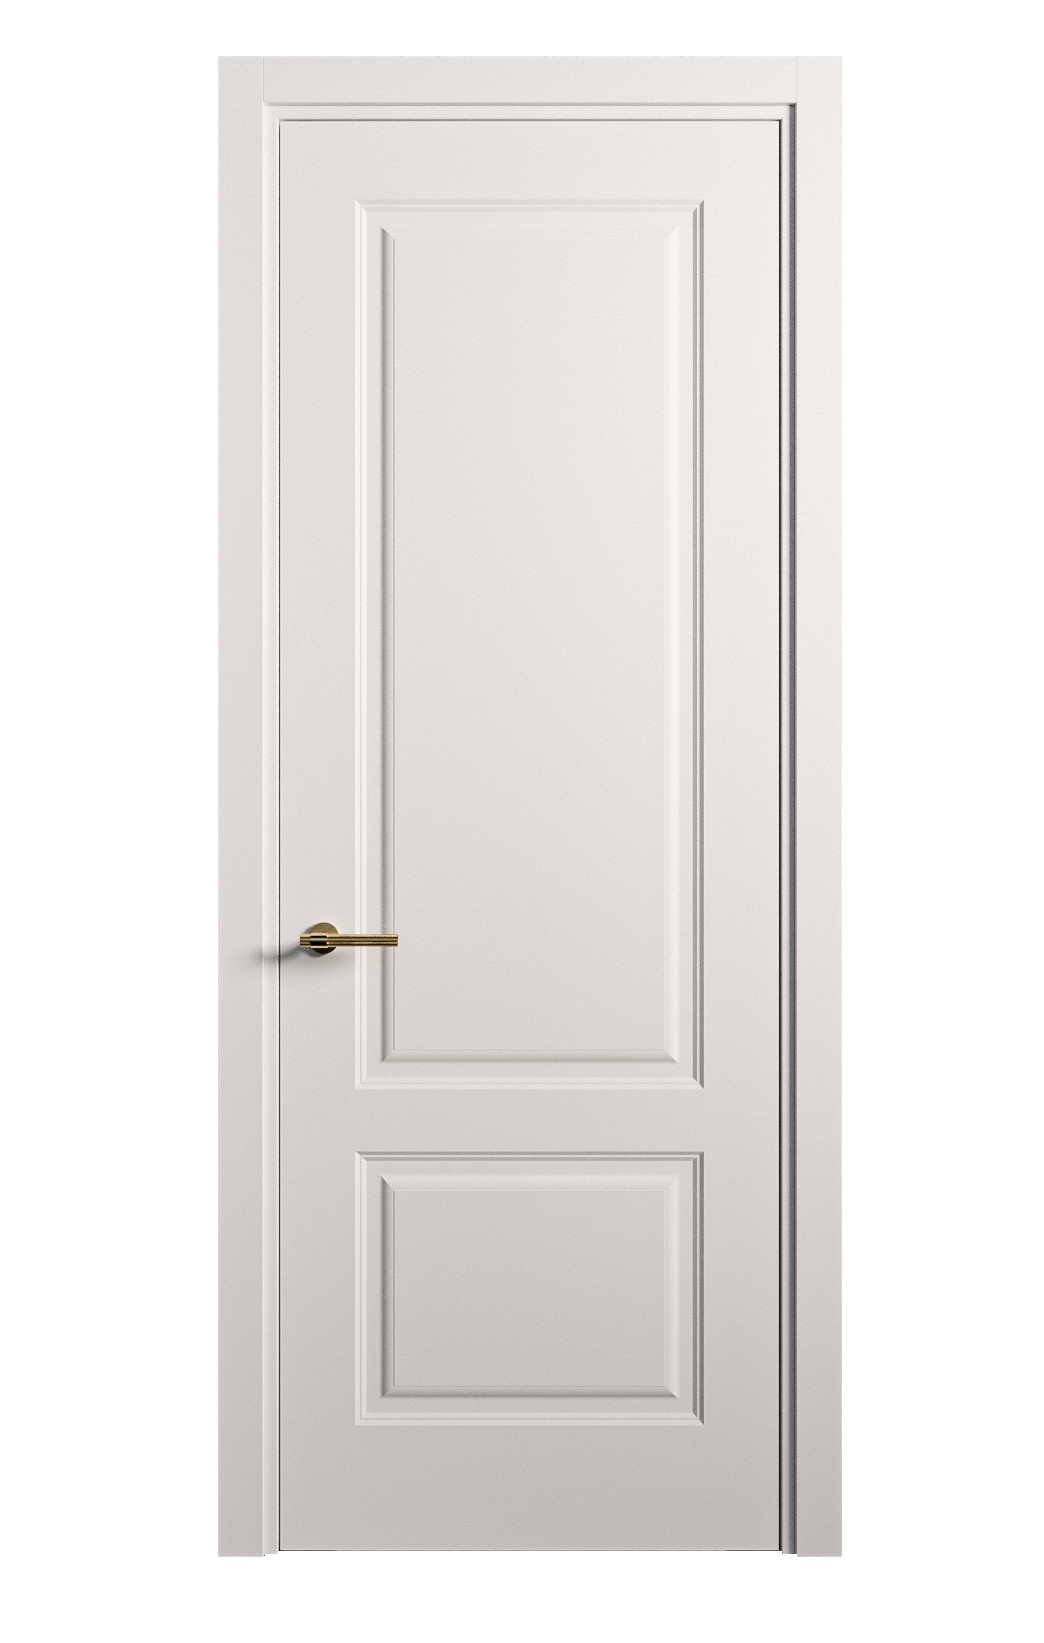 Межкомнатная дверь Вита-1 глухая эмаль ral 9003 26257